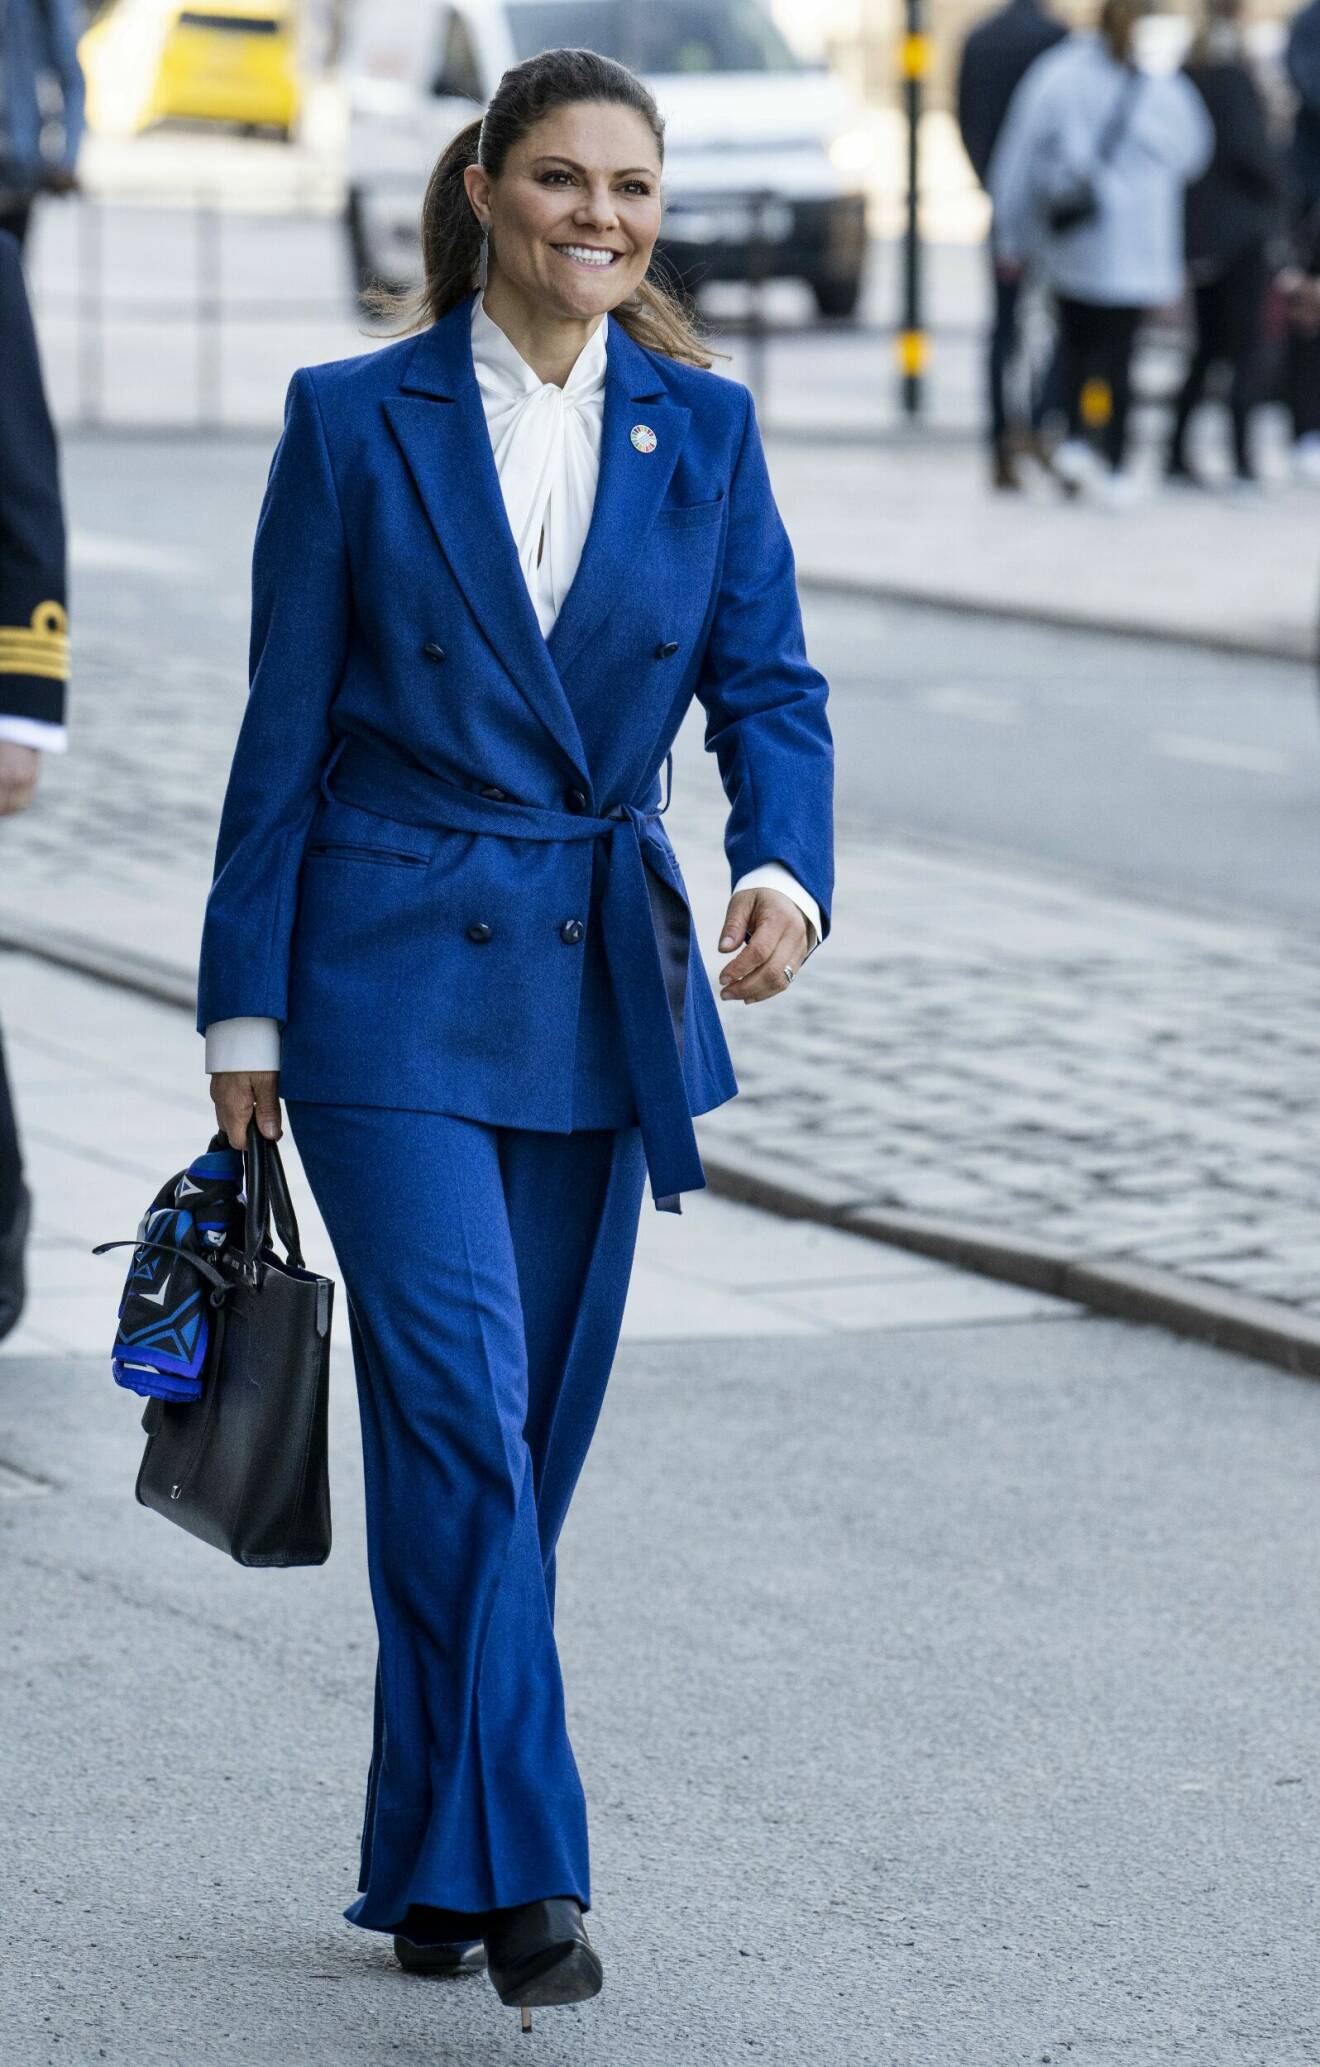 Kronprinsessan Victoria i den blå kostymen från Rodebjer.